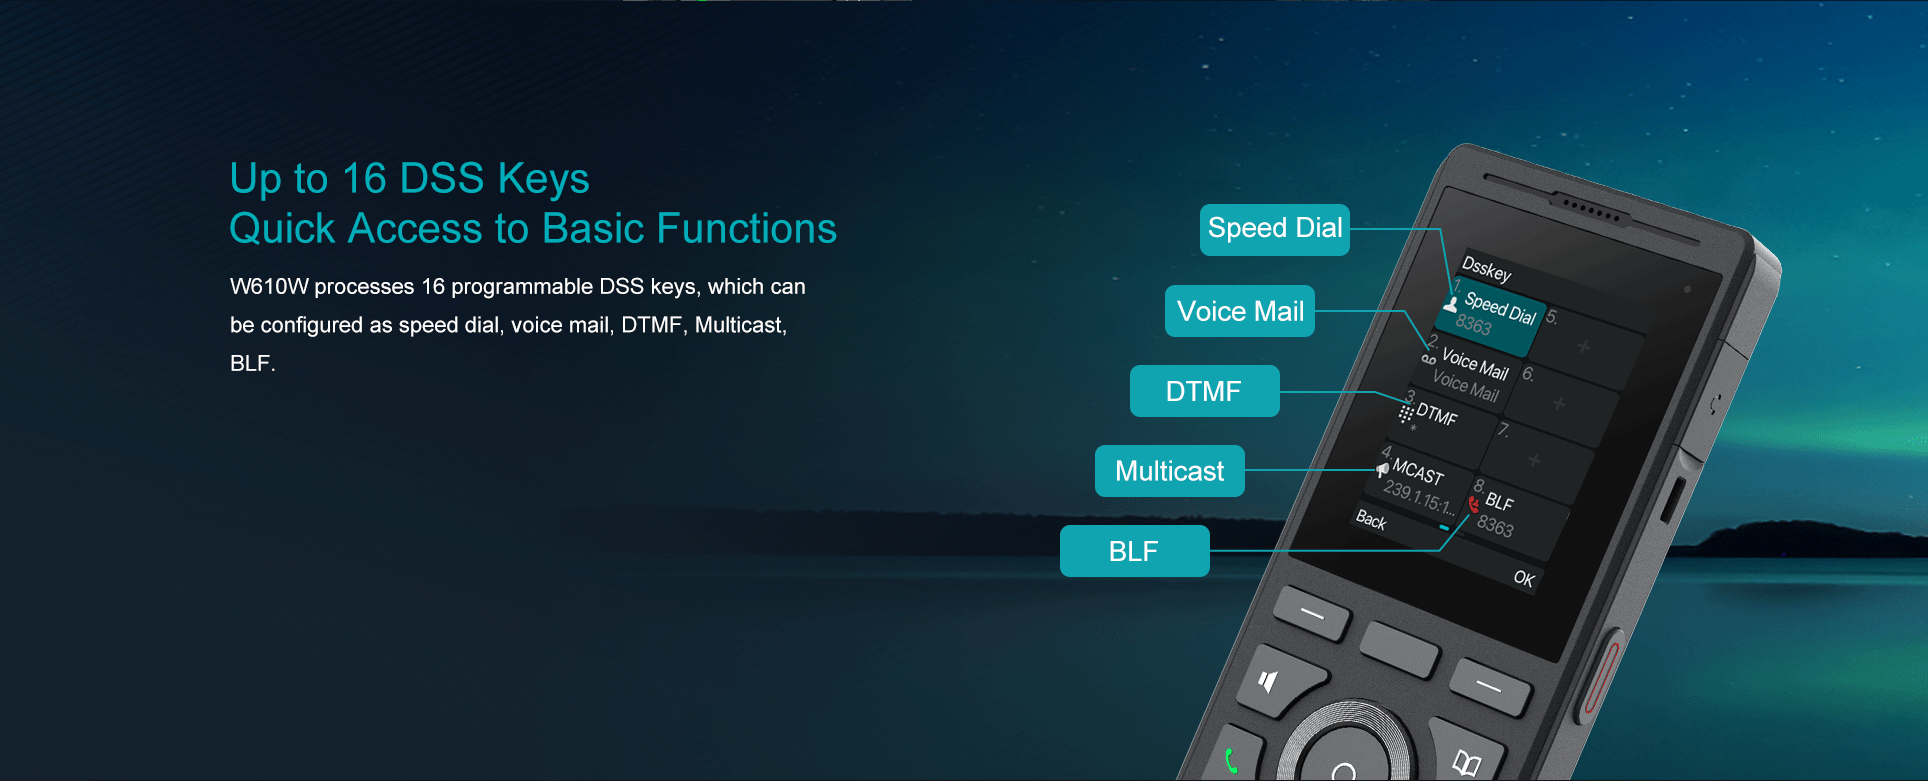 LINKVIL W610W ist ein tragbares, stilvolles WLAN-Telefon, das für den Einsatz in der mobile Kommunikation konzipiert wurde. Dank integriertem Dual-Band 2,4GHz & 5GHz Wi-Fi